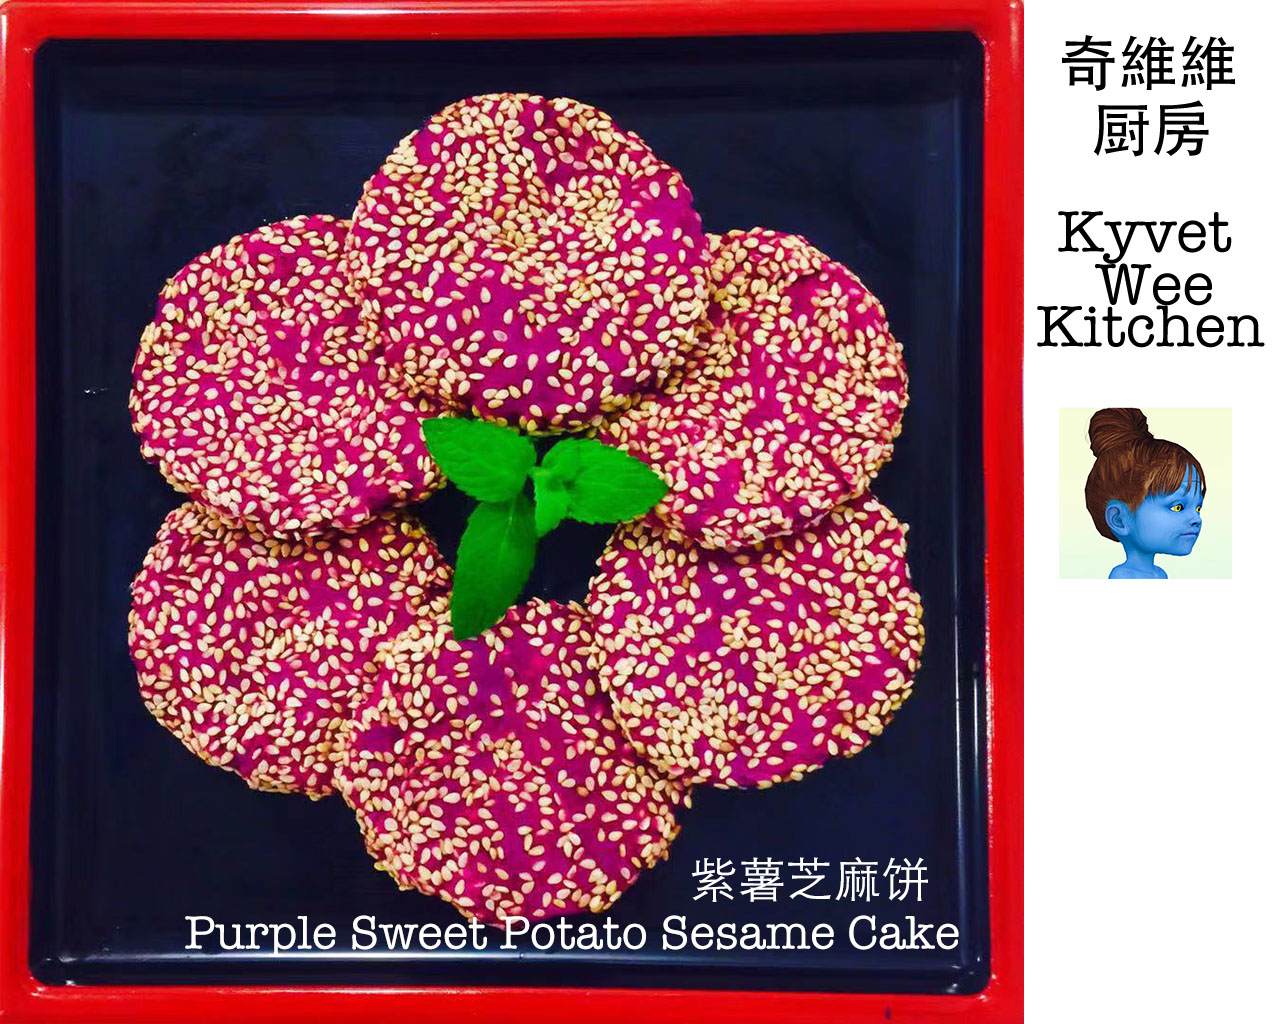 紫薯芝麻饼 Purple Sweet Potato Sesame Cake的做法